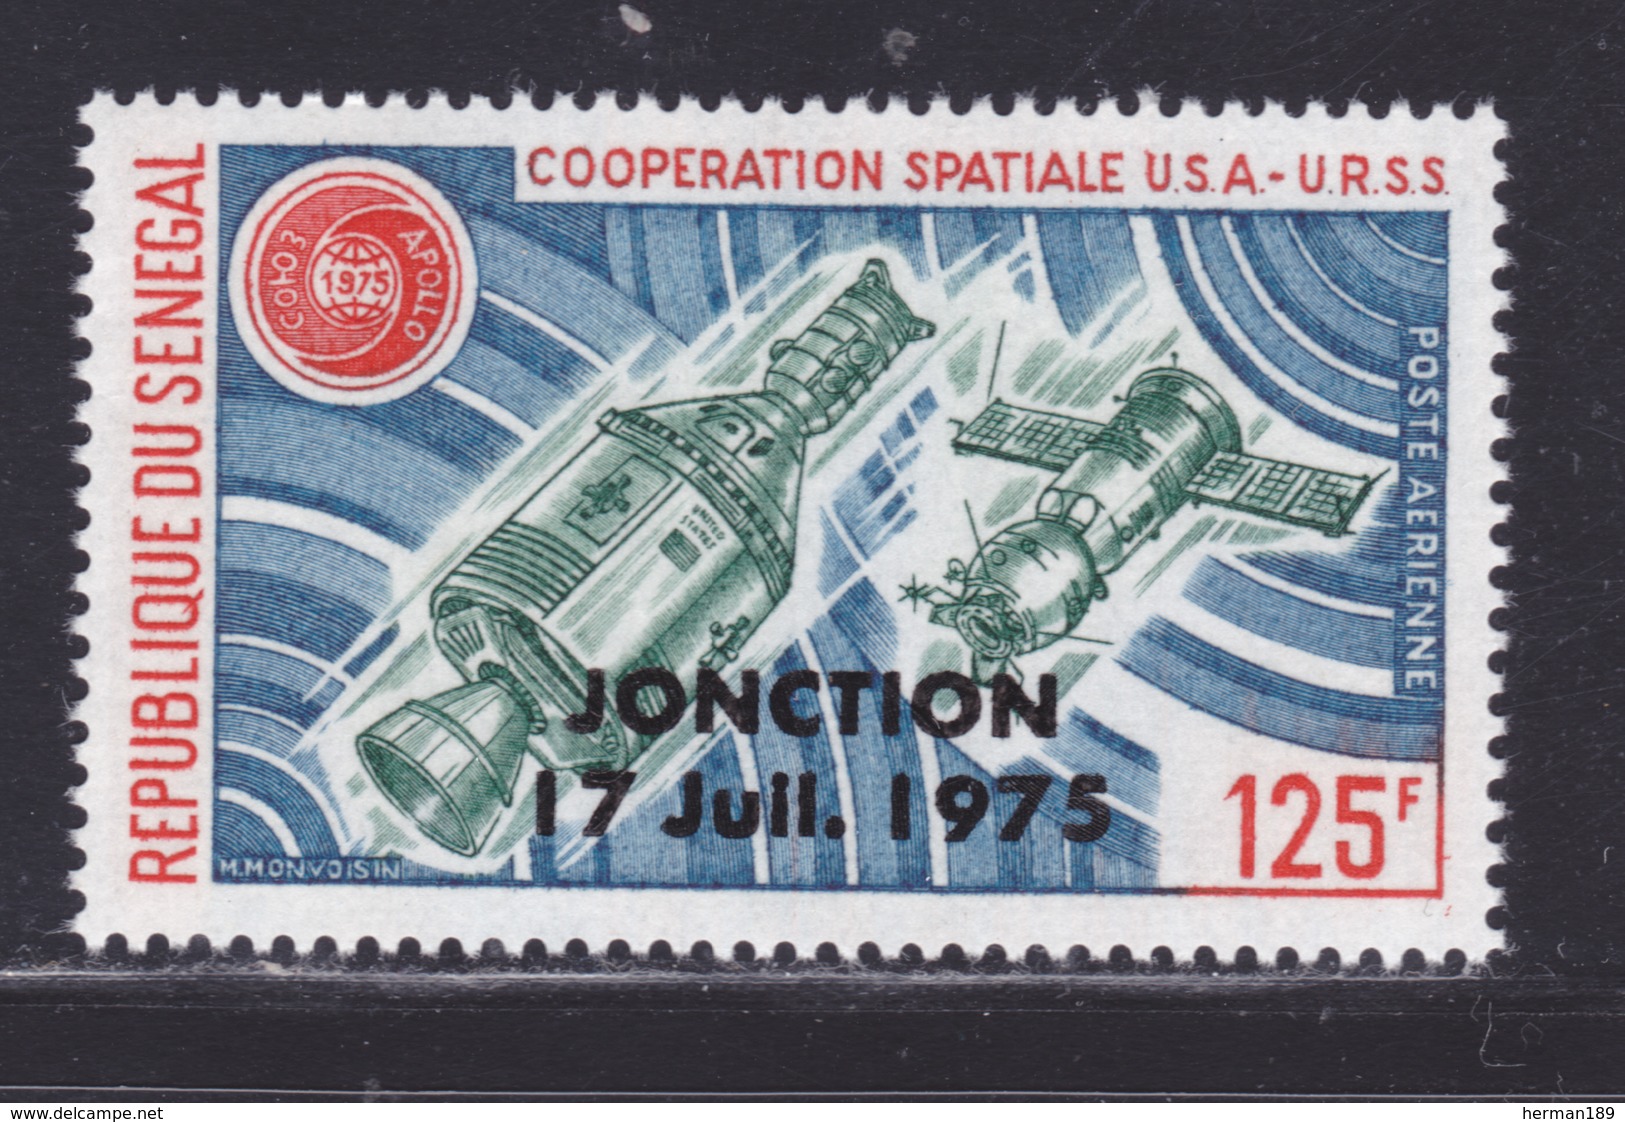 SENEGAL AERIENS N°  148 ** MNH Neuf Sans Charnière, TB (D7995) Cosmos, Jonction, Coopération Spatiale USA URSS -1975 - Sénégal (1960-...)